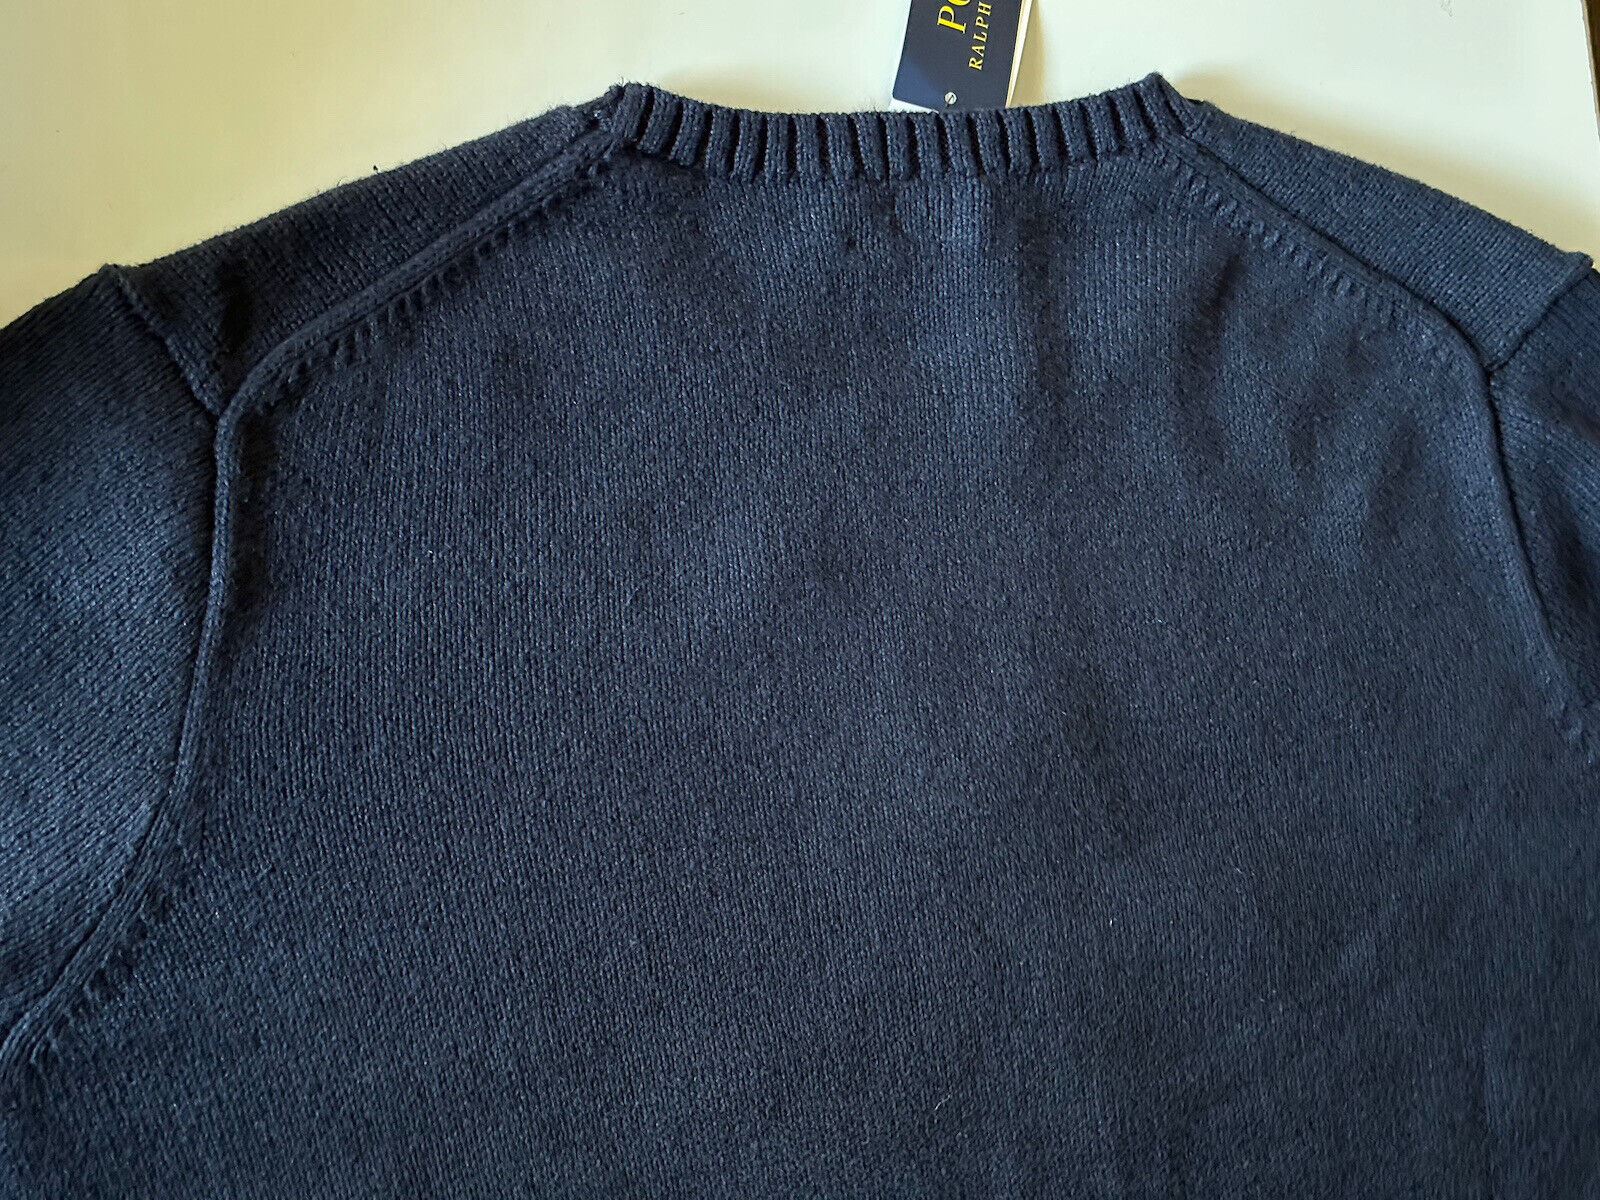 NWT $428 Polo Ralph Lauren Big Pony Bear Cotton/Linen Blue Sweater 2XLT